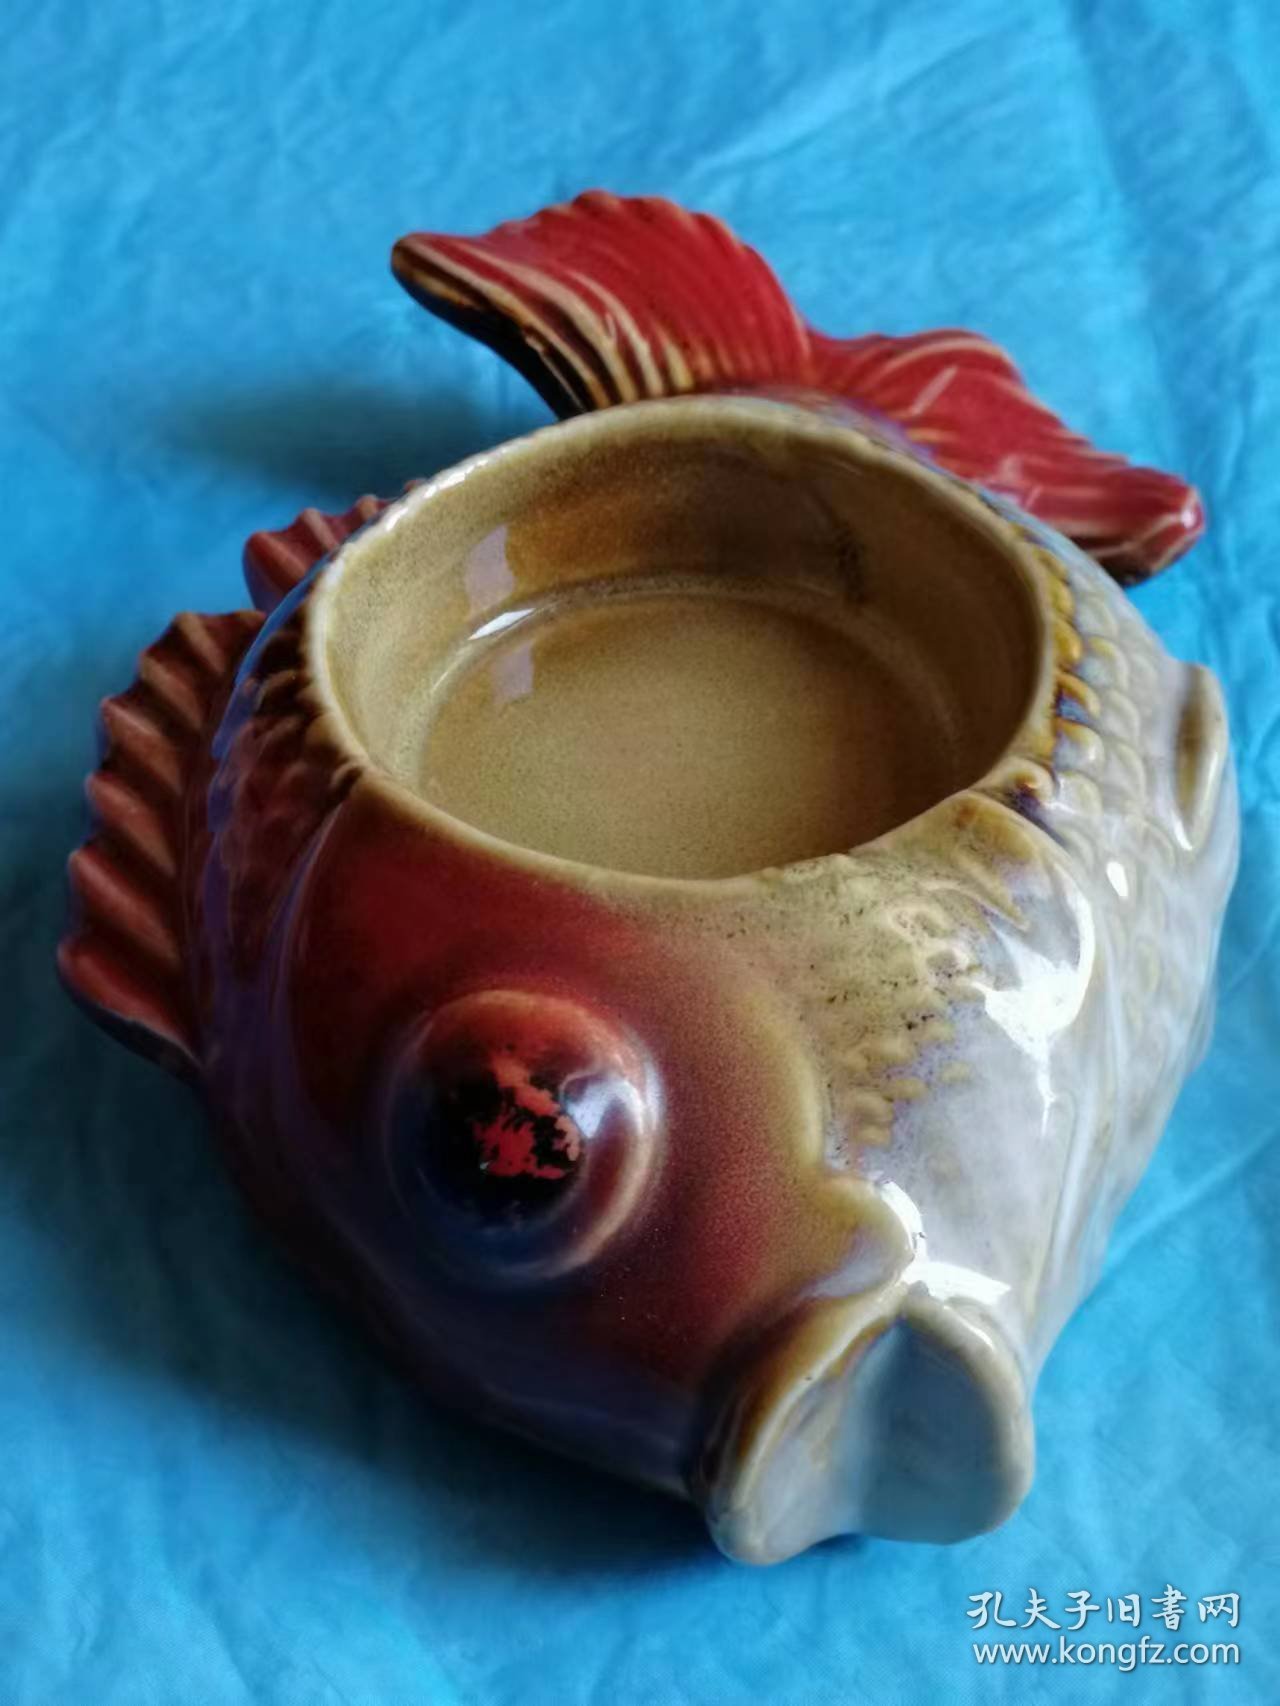 （打折处理，购百元再赠书）早期鱼型陶瓷器皿一件     造型逼真大气，颜色鲜艳美丽